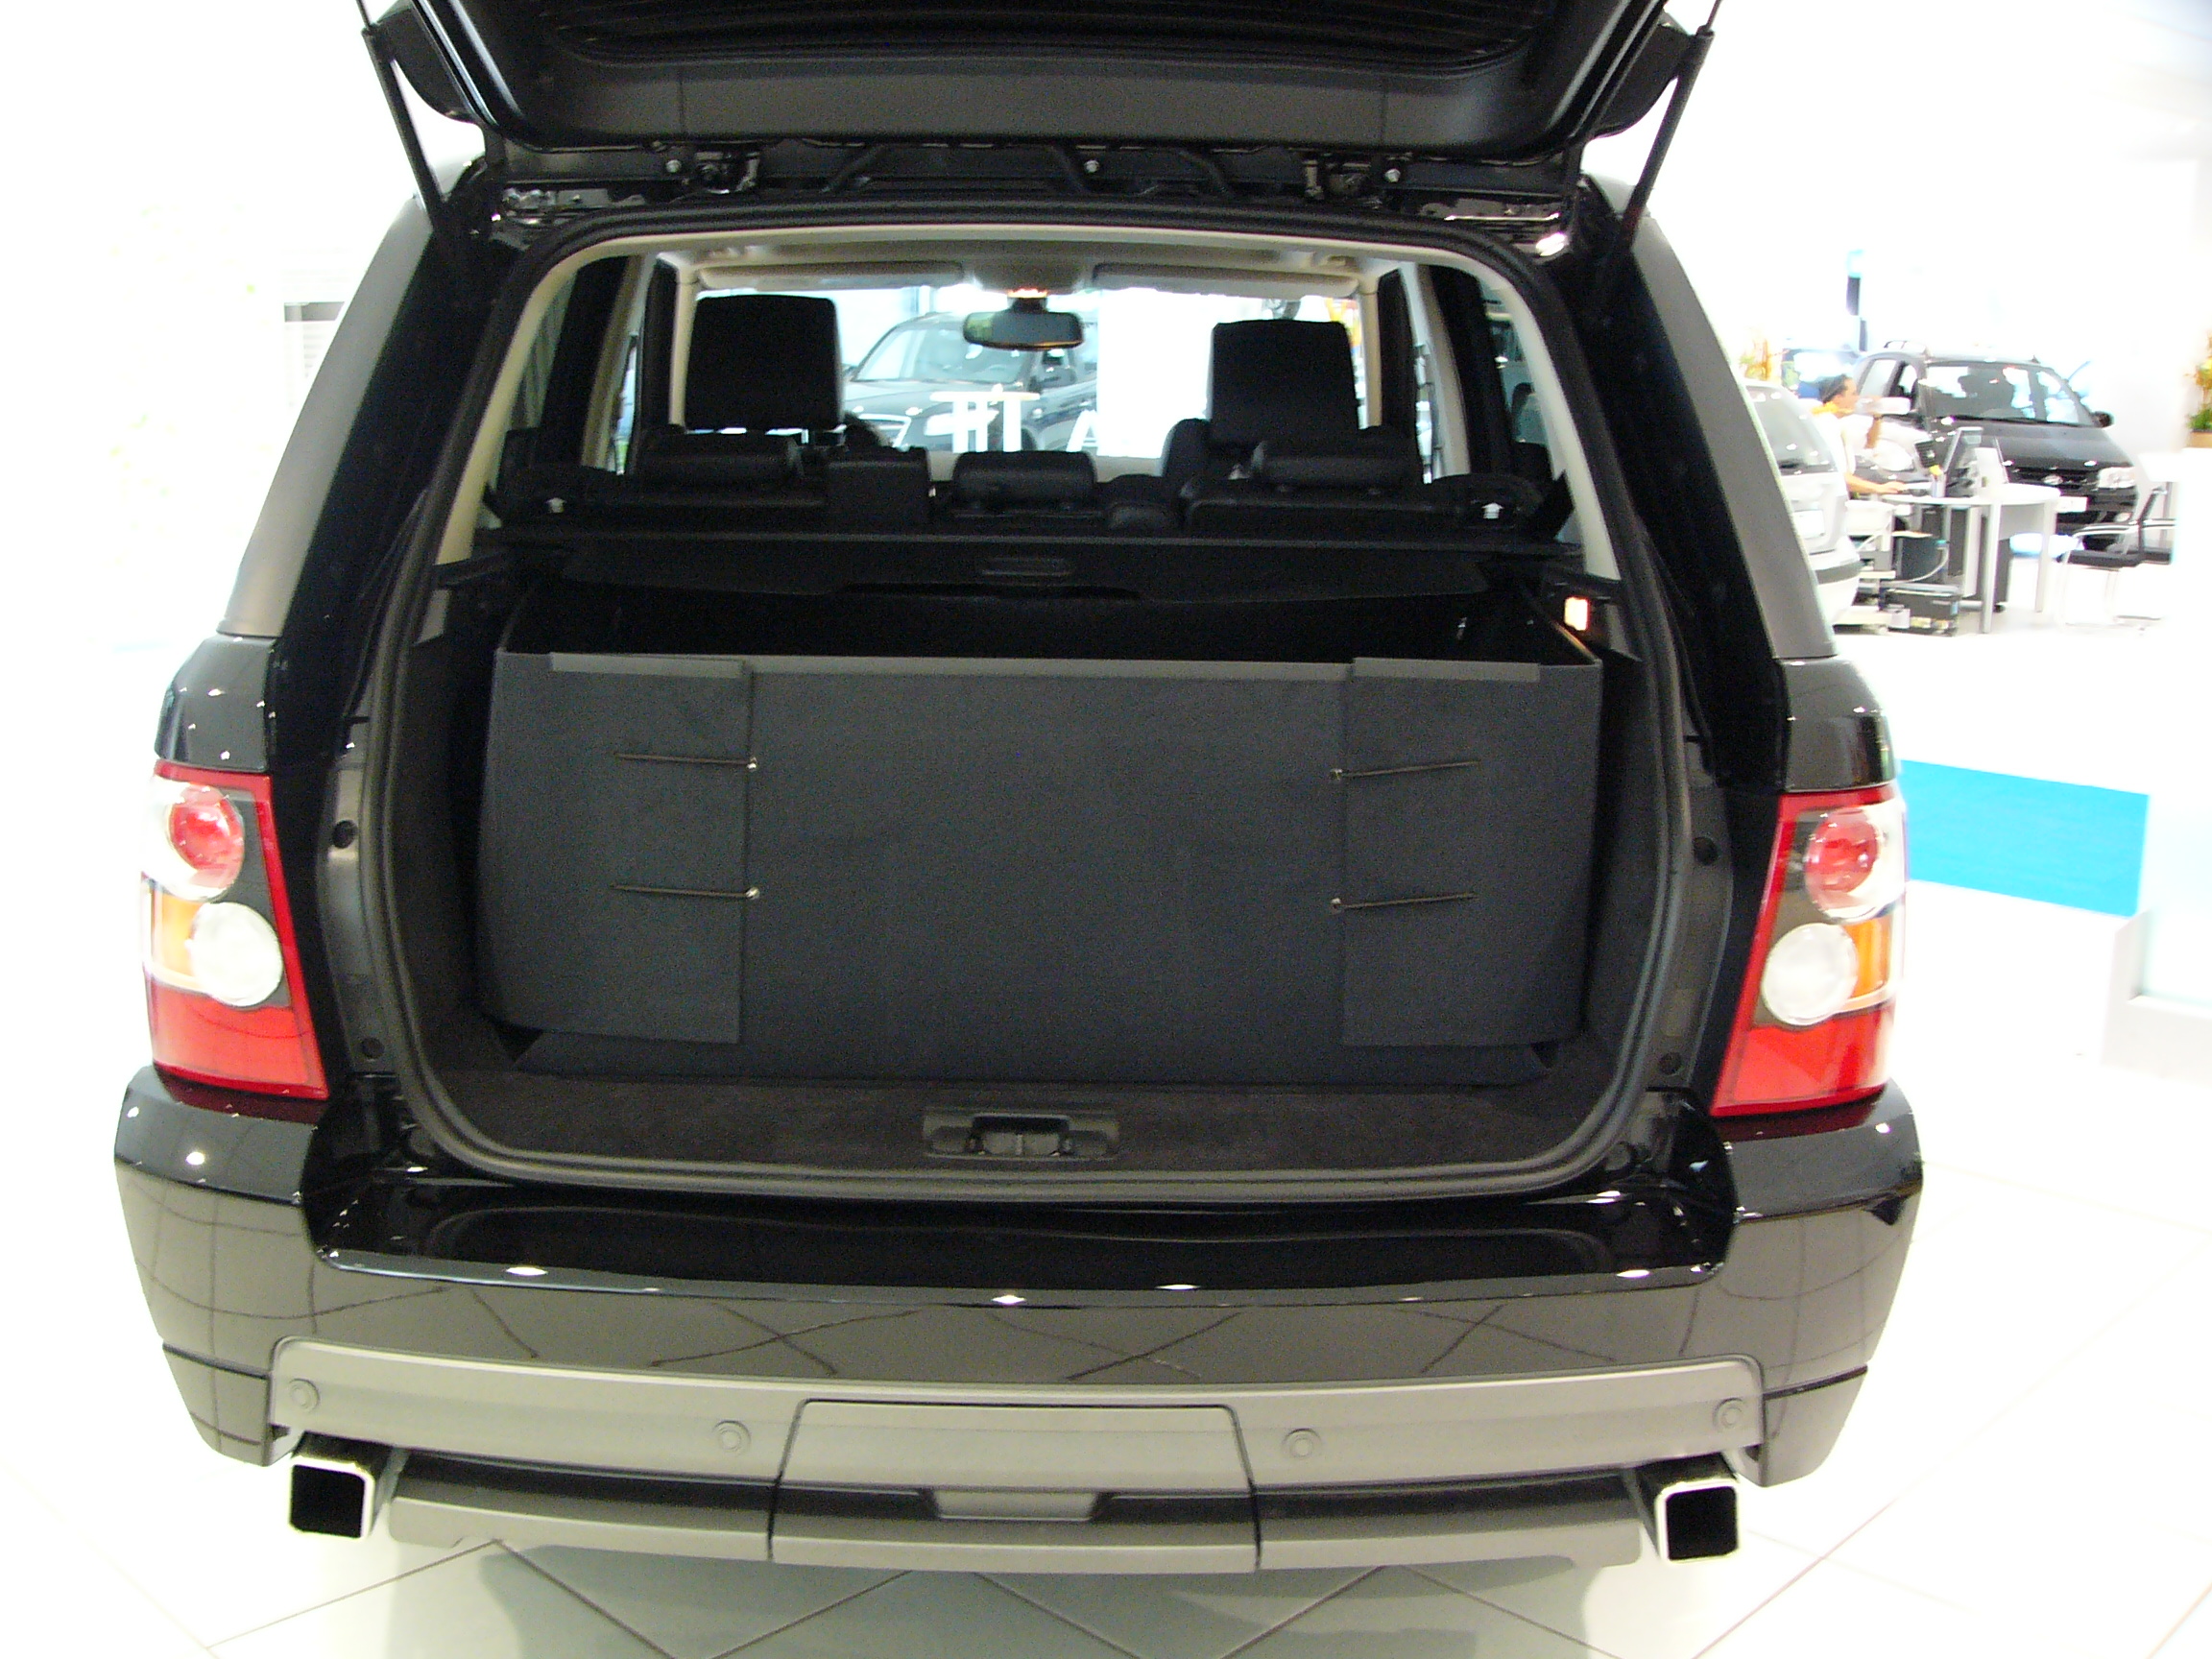 Stoßstangenschutz-Abdeckung hinten, Range Rover Sport, Kofferraum, Equipment - alle Hersteller, Range Rover Sport, Fahrzeugauswahl